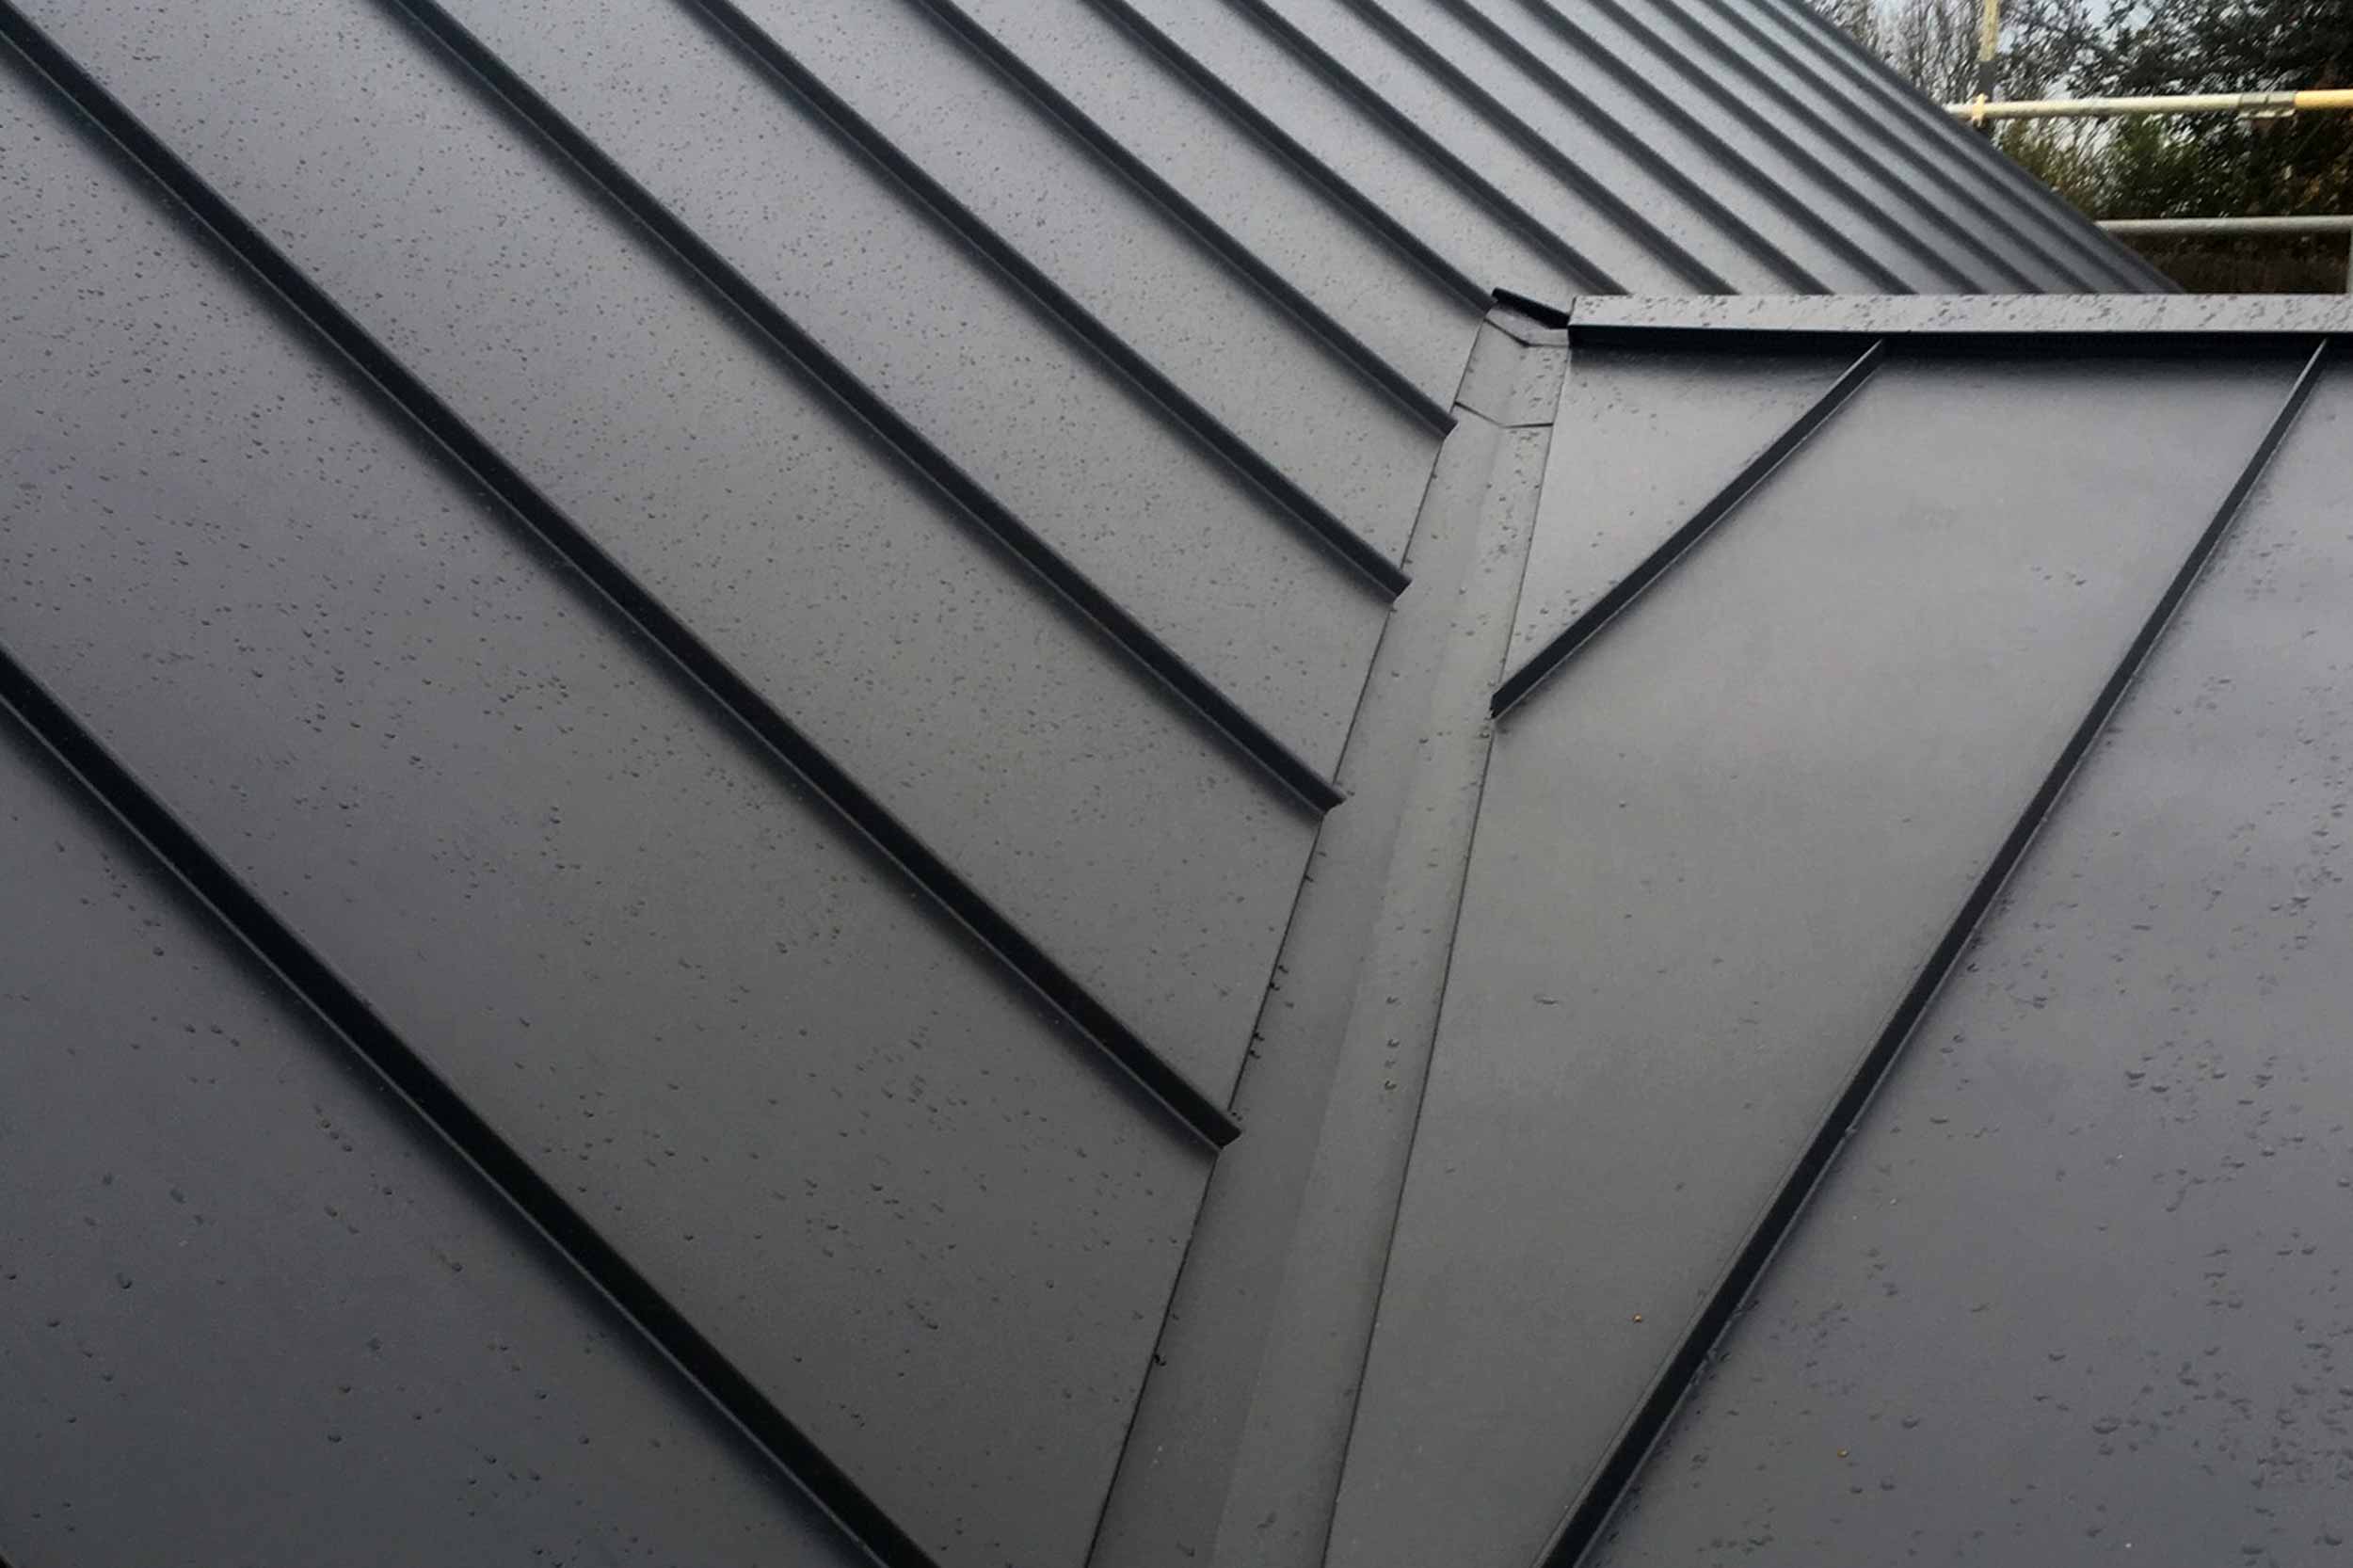 steel-roof-installers-uk-colourcoat-roof-5 - Steelroofinstallersuk